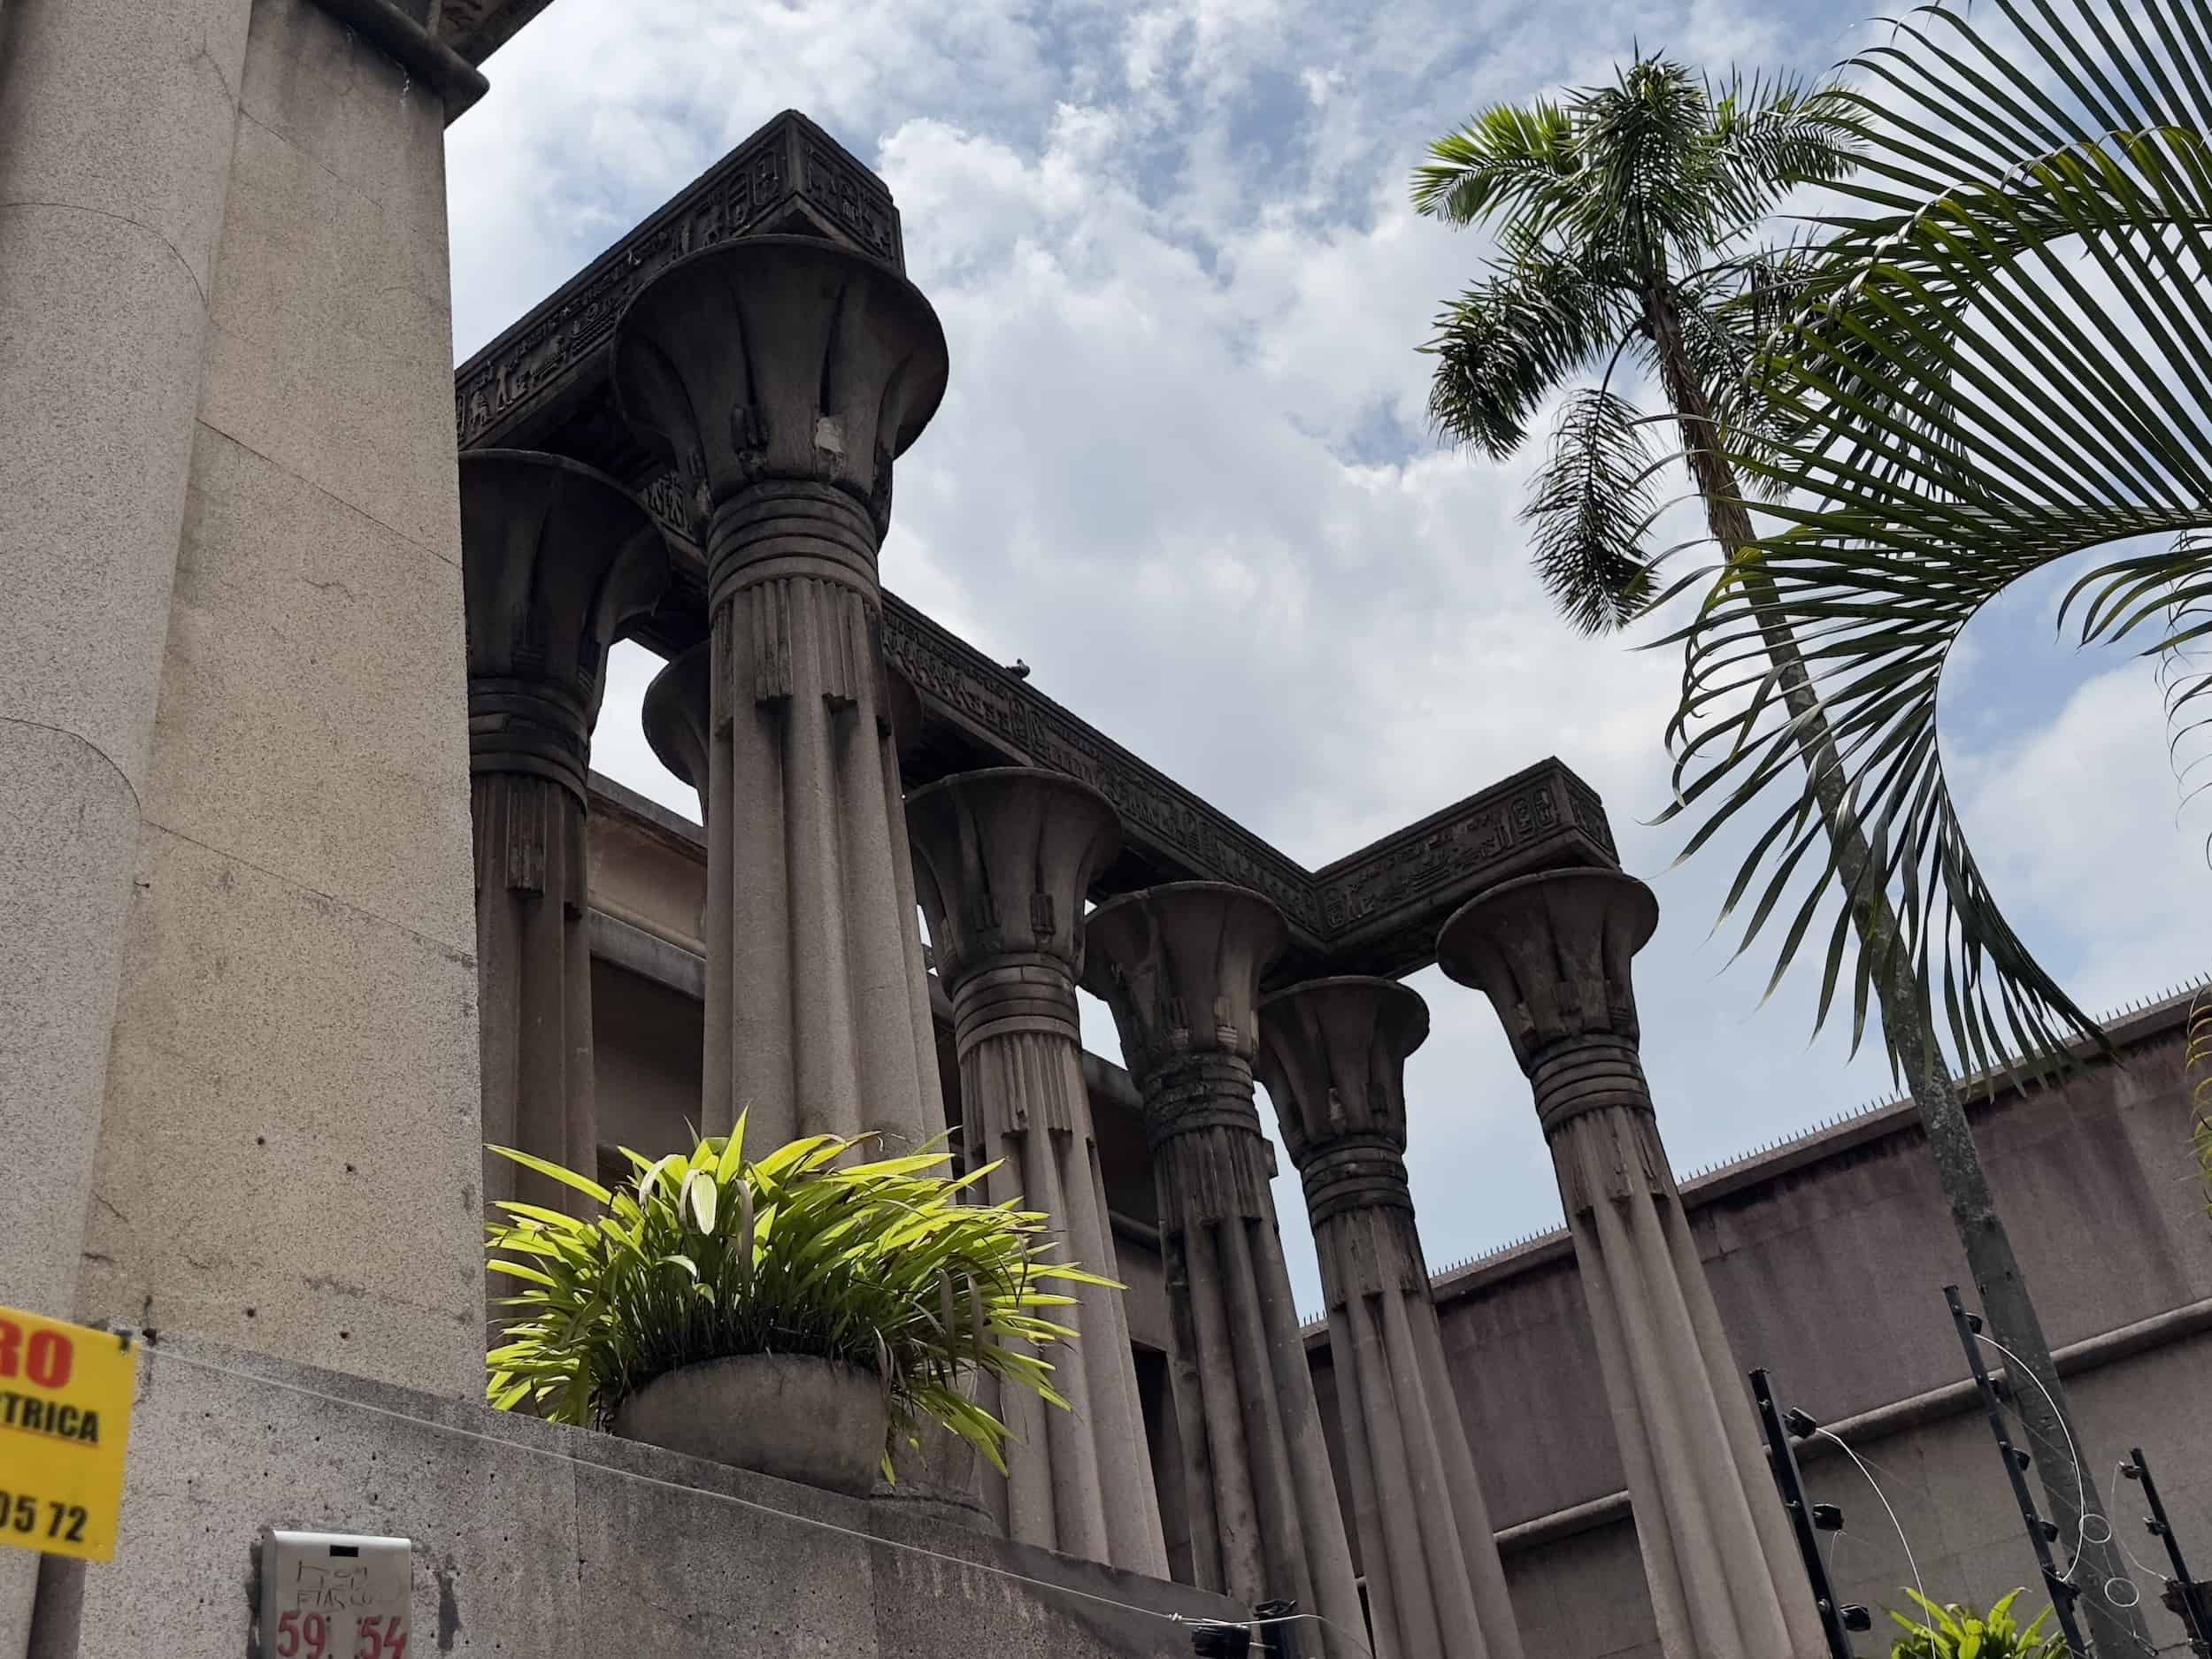 Egyptian Palace in Prado, El Centro, Medellín, Colombia